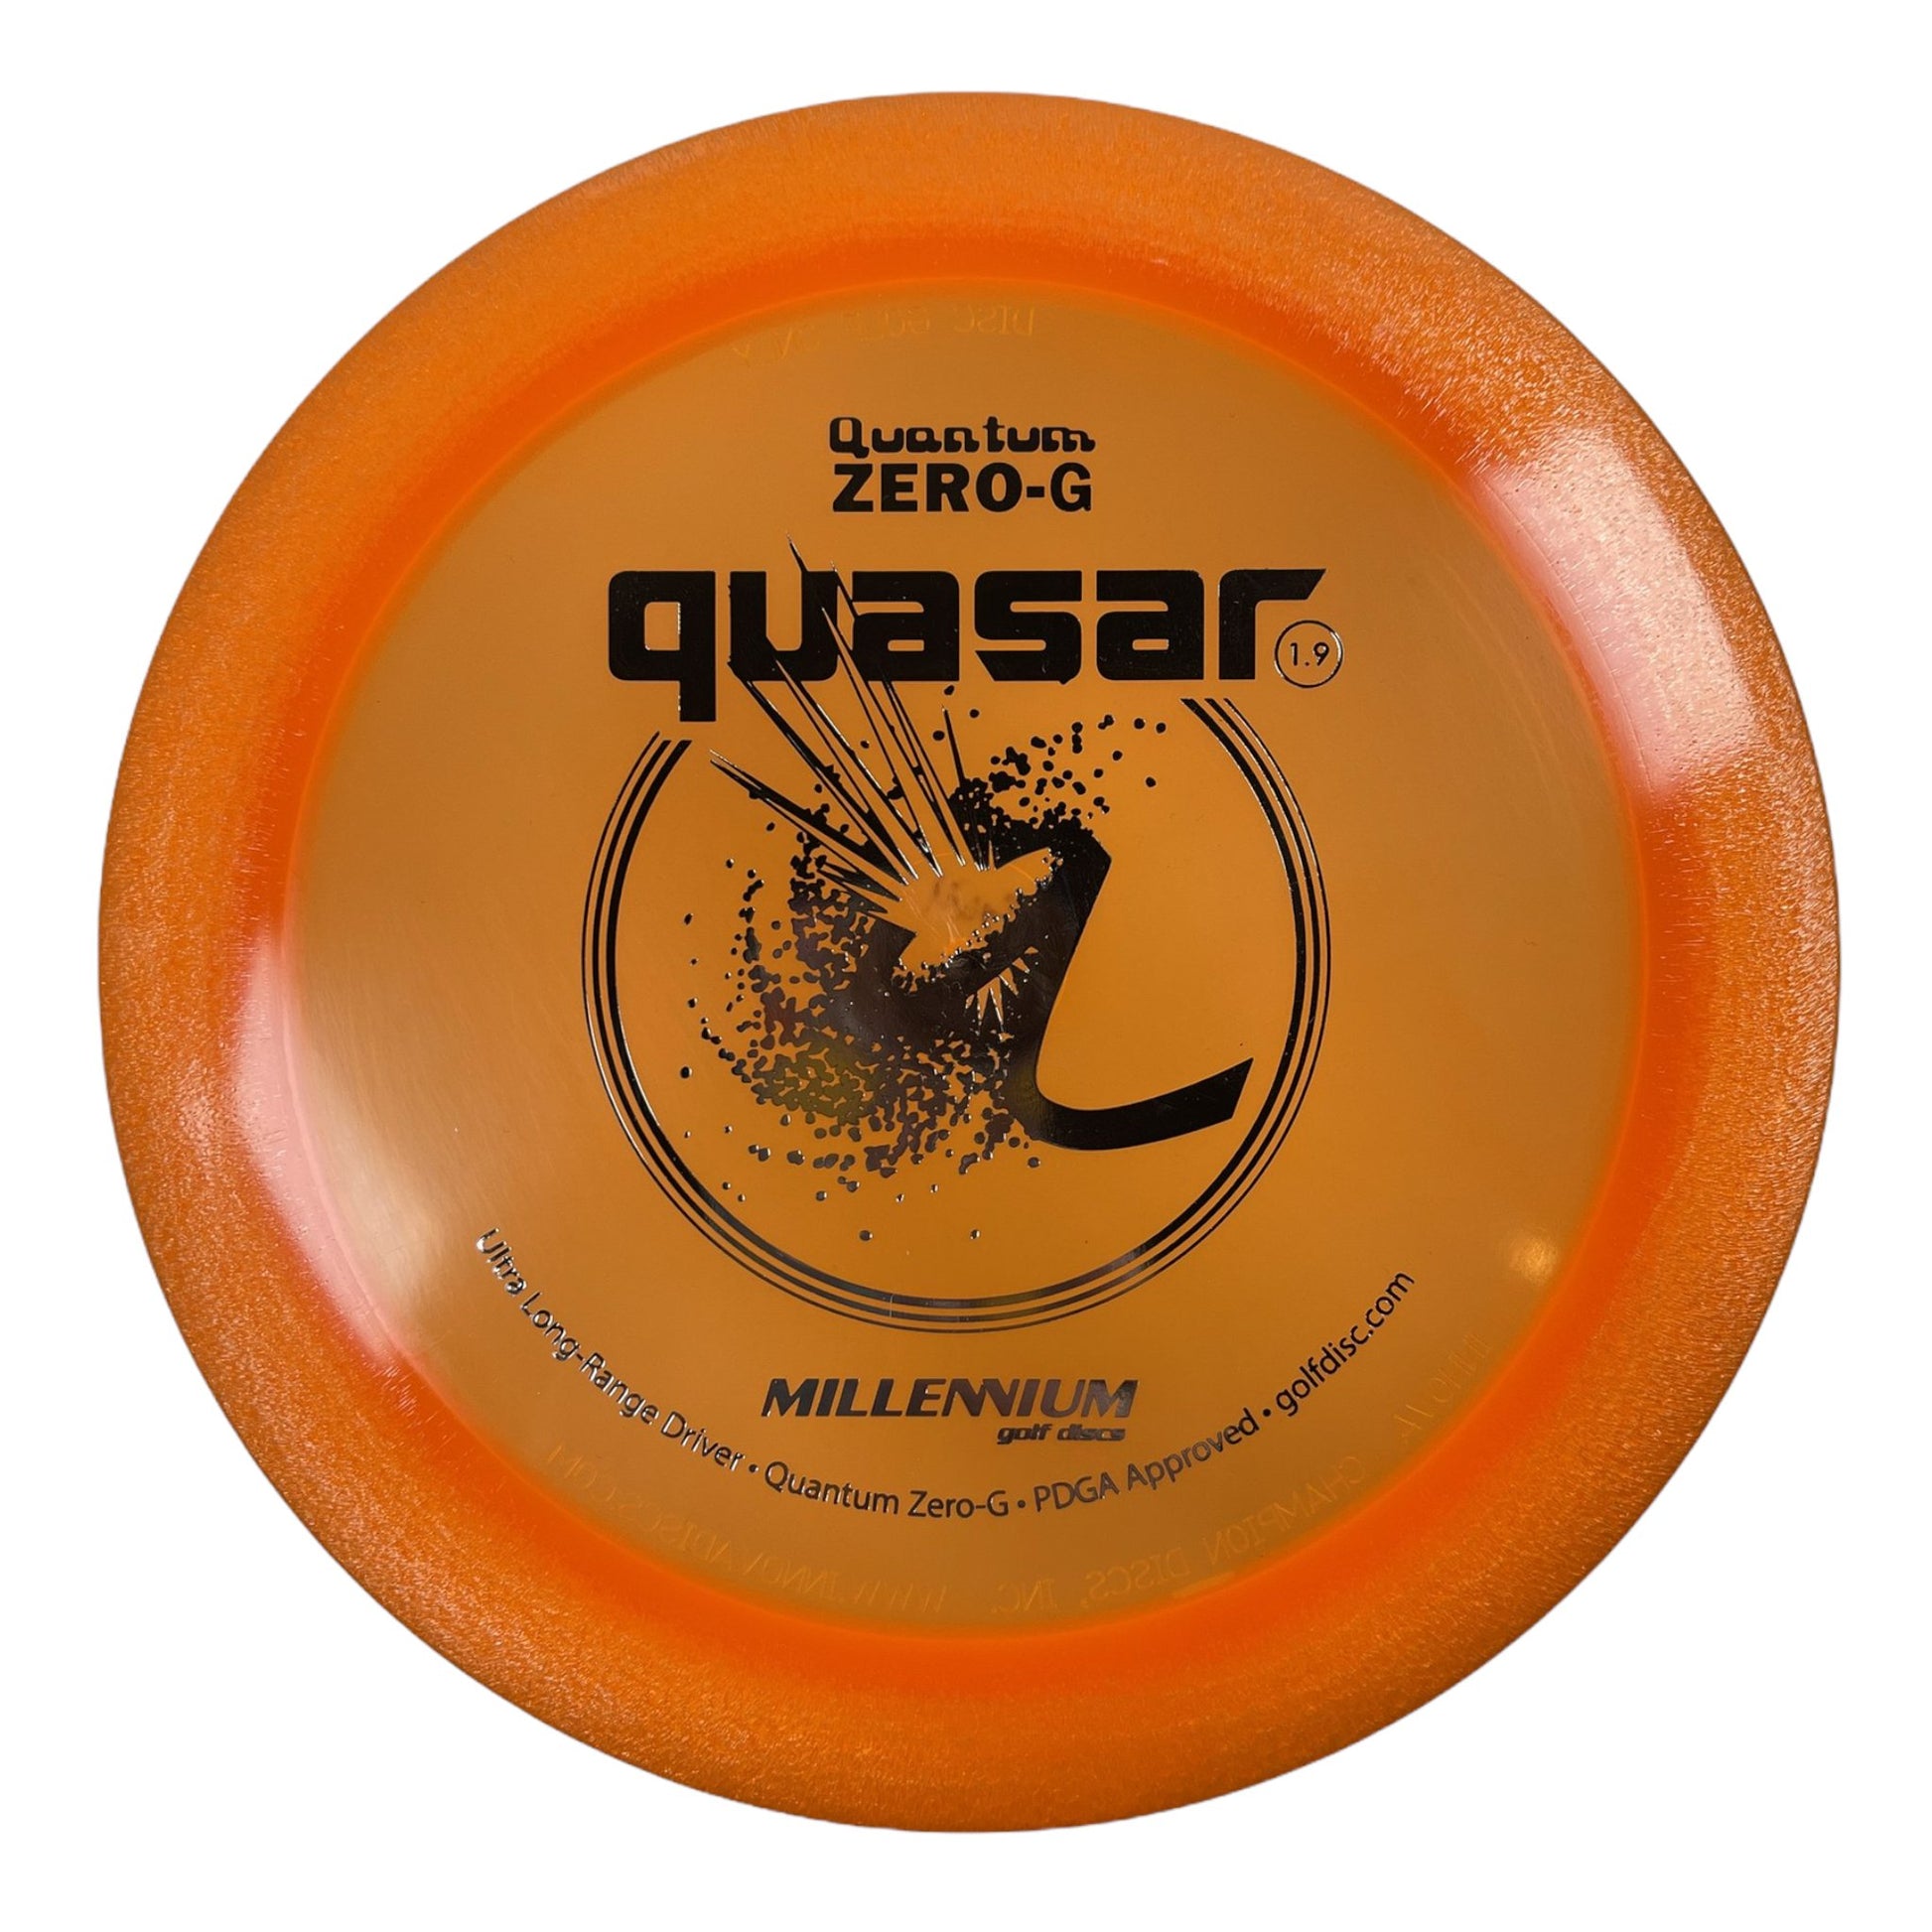 Millennium Golf Discs Quasar | Quantum Zero-G | Orange/Silver 143g Disc Golf